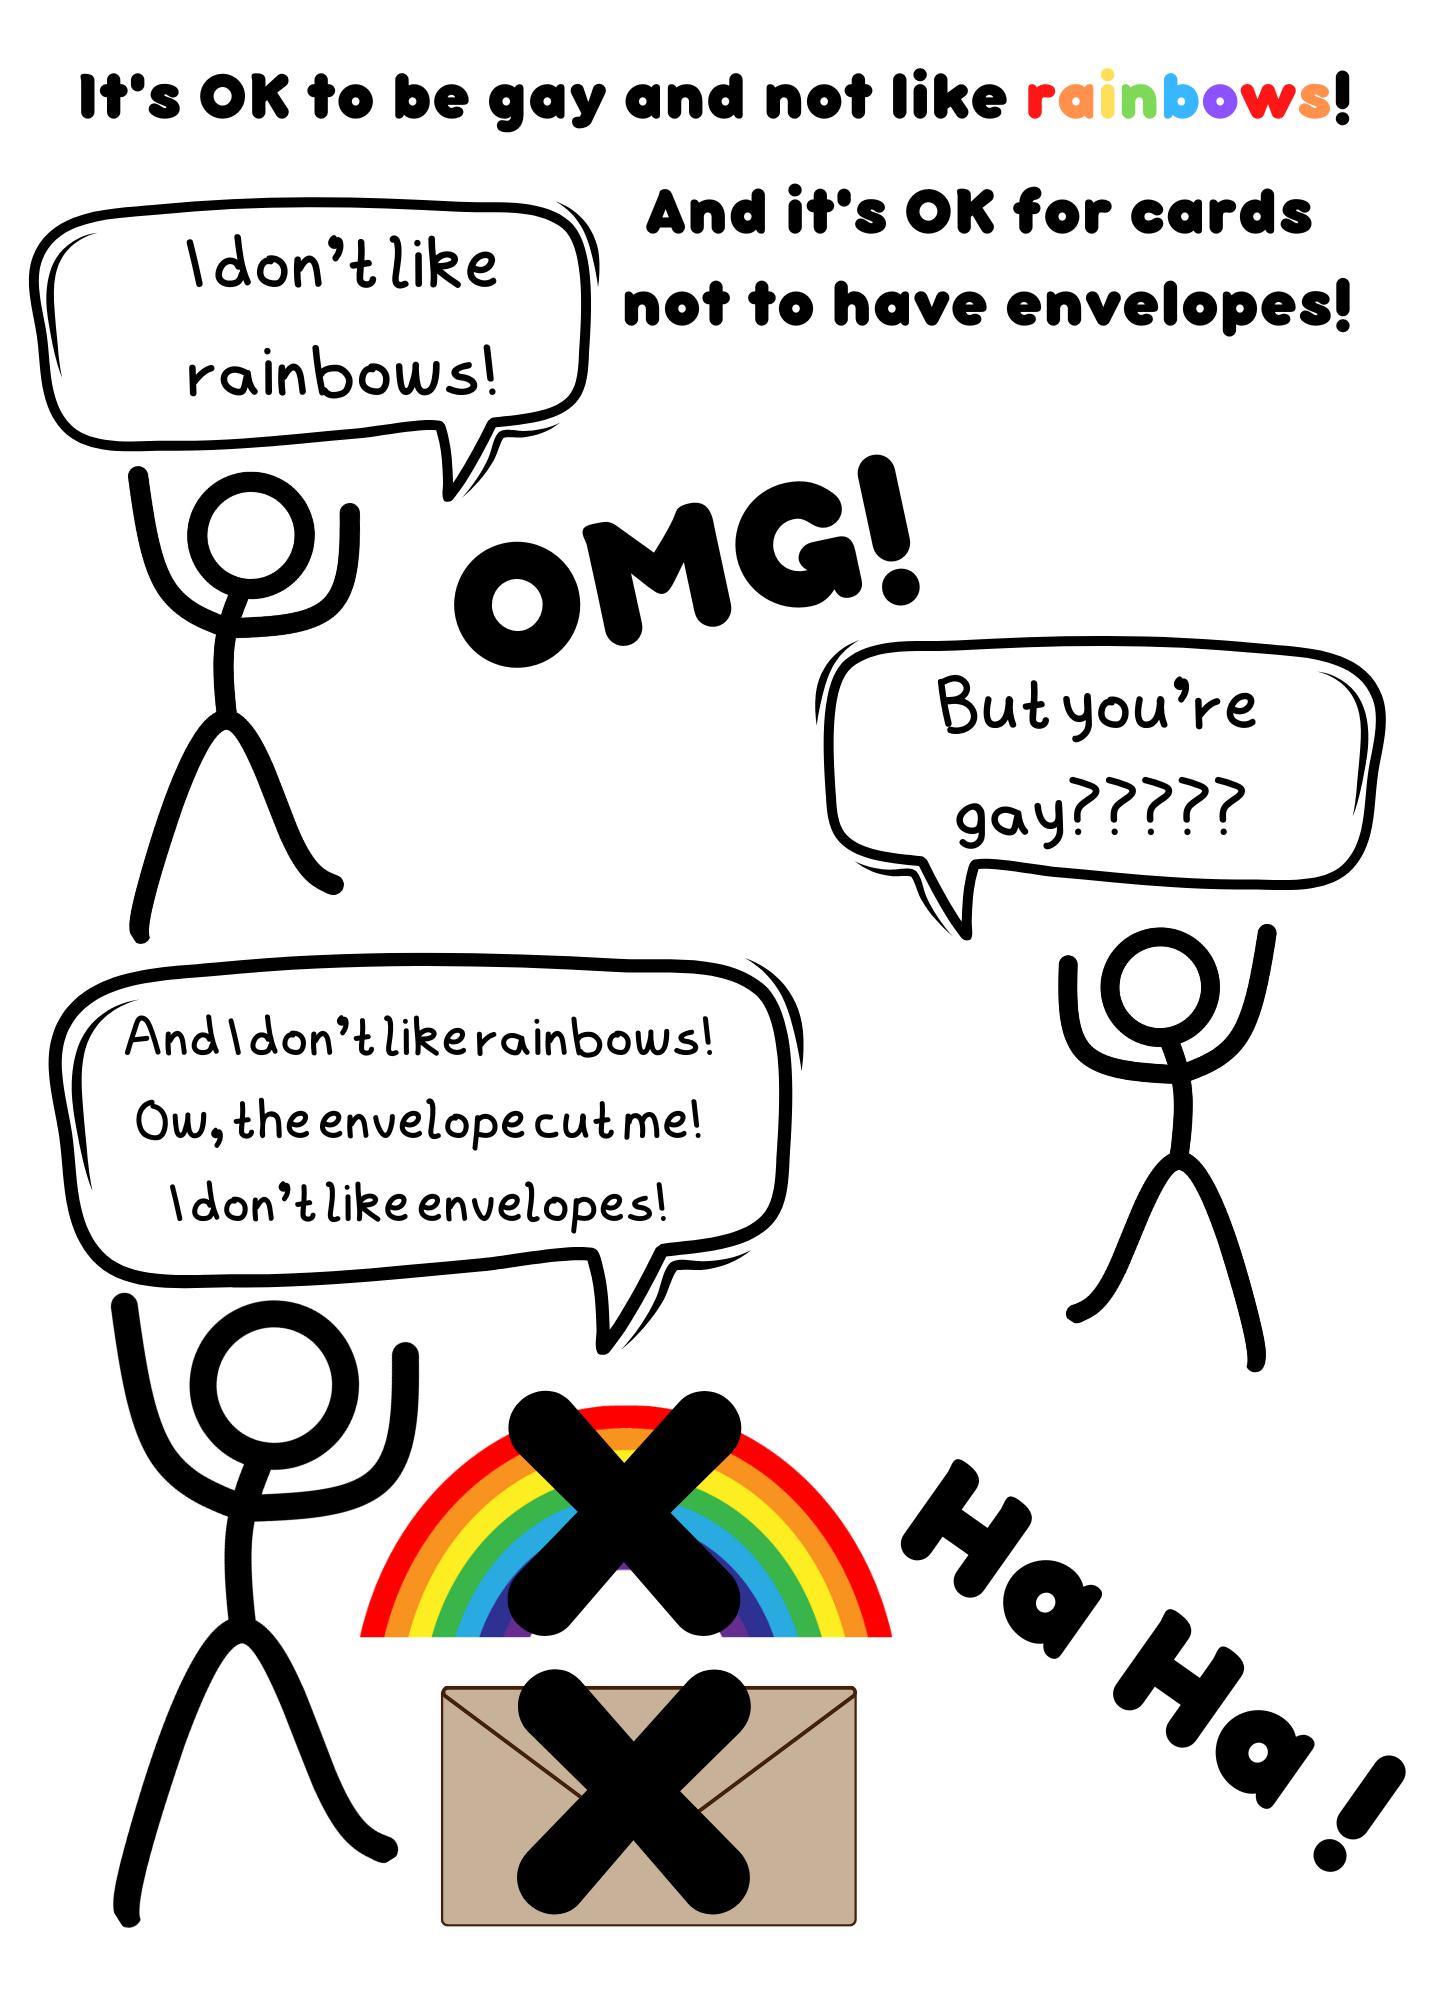 LGBT + Happy Birthday, I don't like Rainbows!